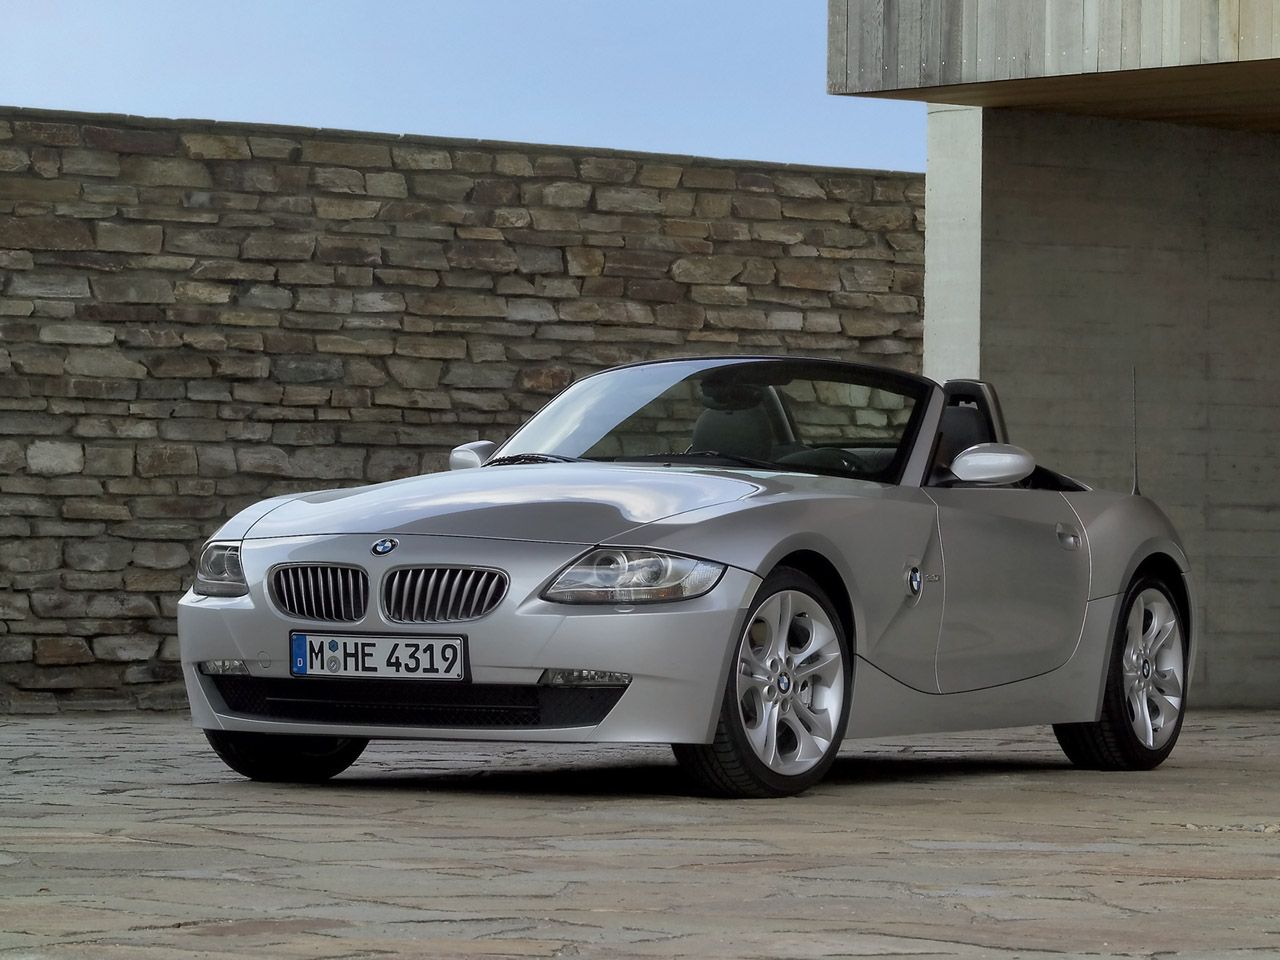 2006-BMW-Z4-M-Roadster-Silver-SA-1280x960.jpg